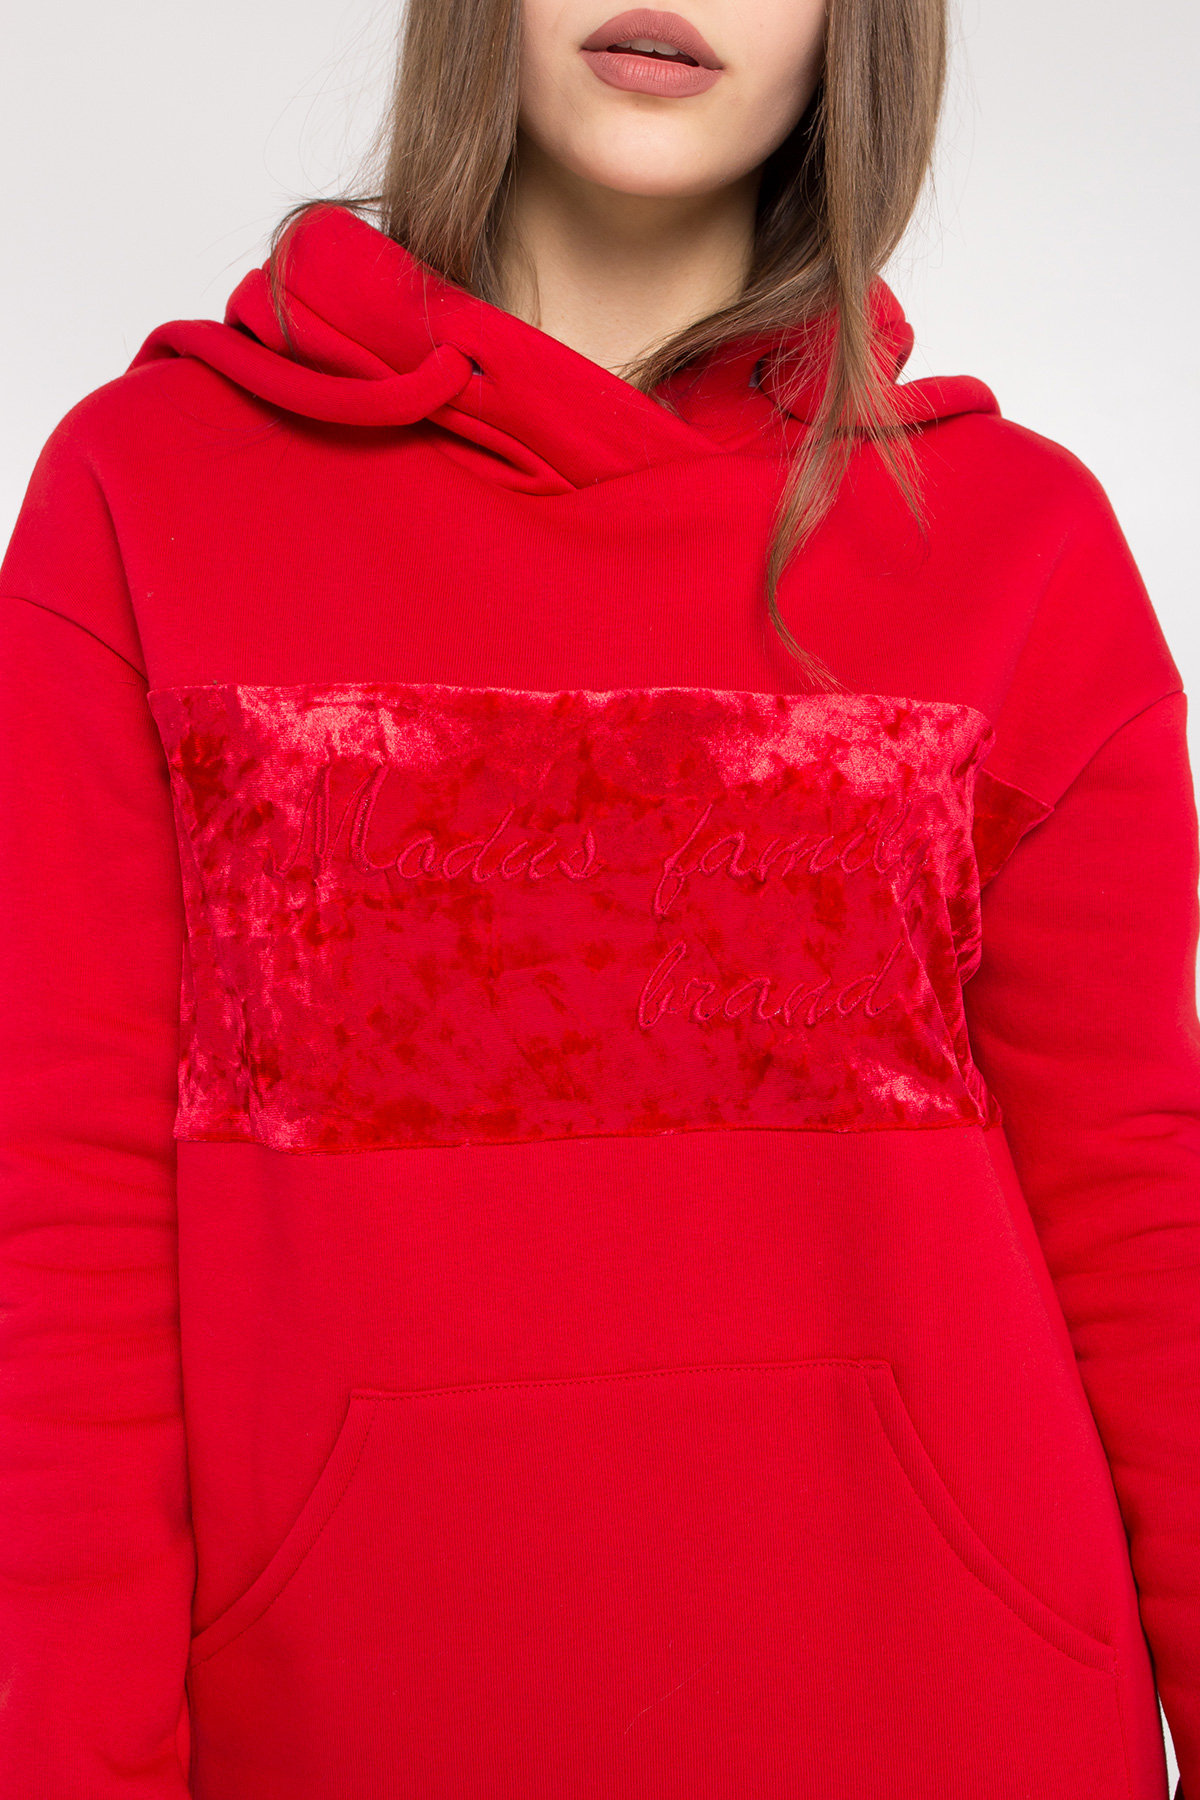 Платье худи Томми 8703 АРТ. 45100 Цвет: Красный/красный - фото 5, интернет магазин tm-modus.ru